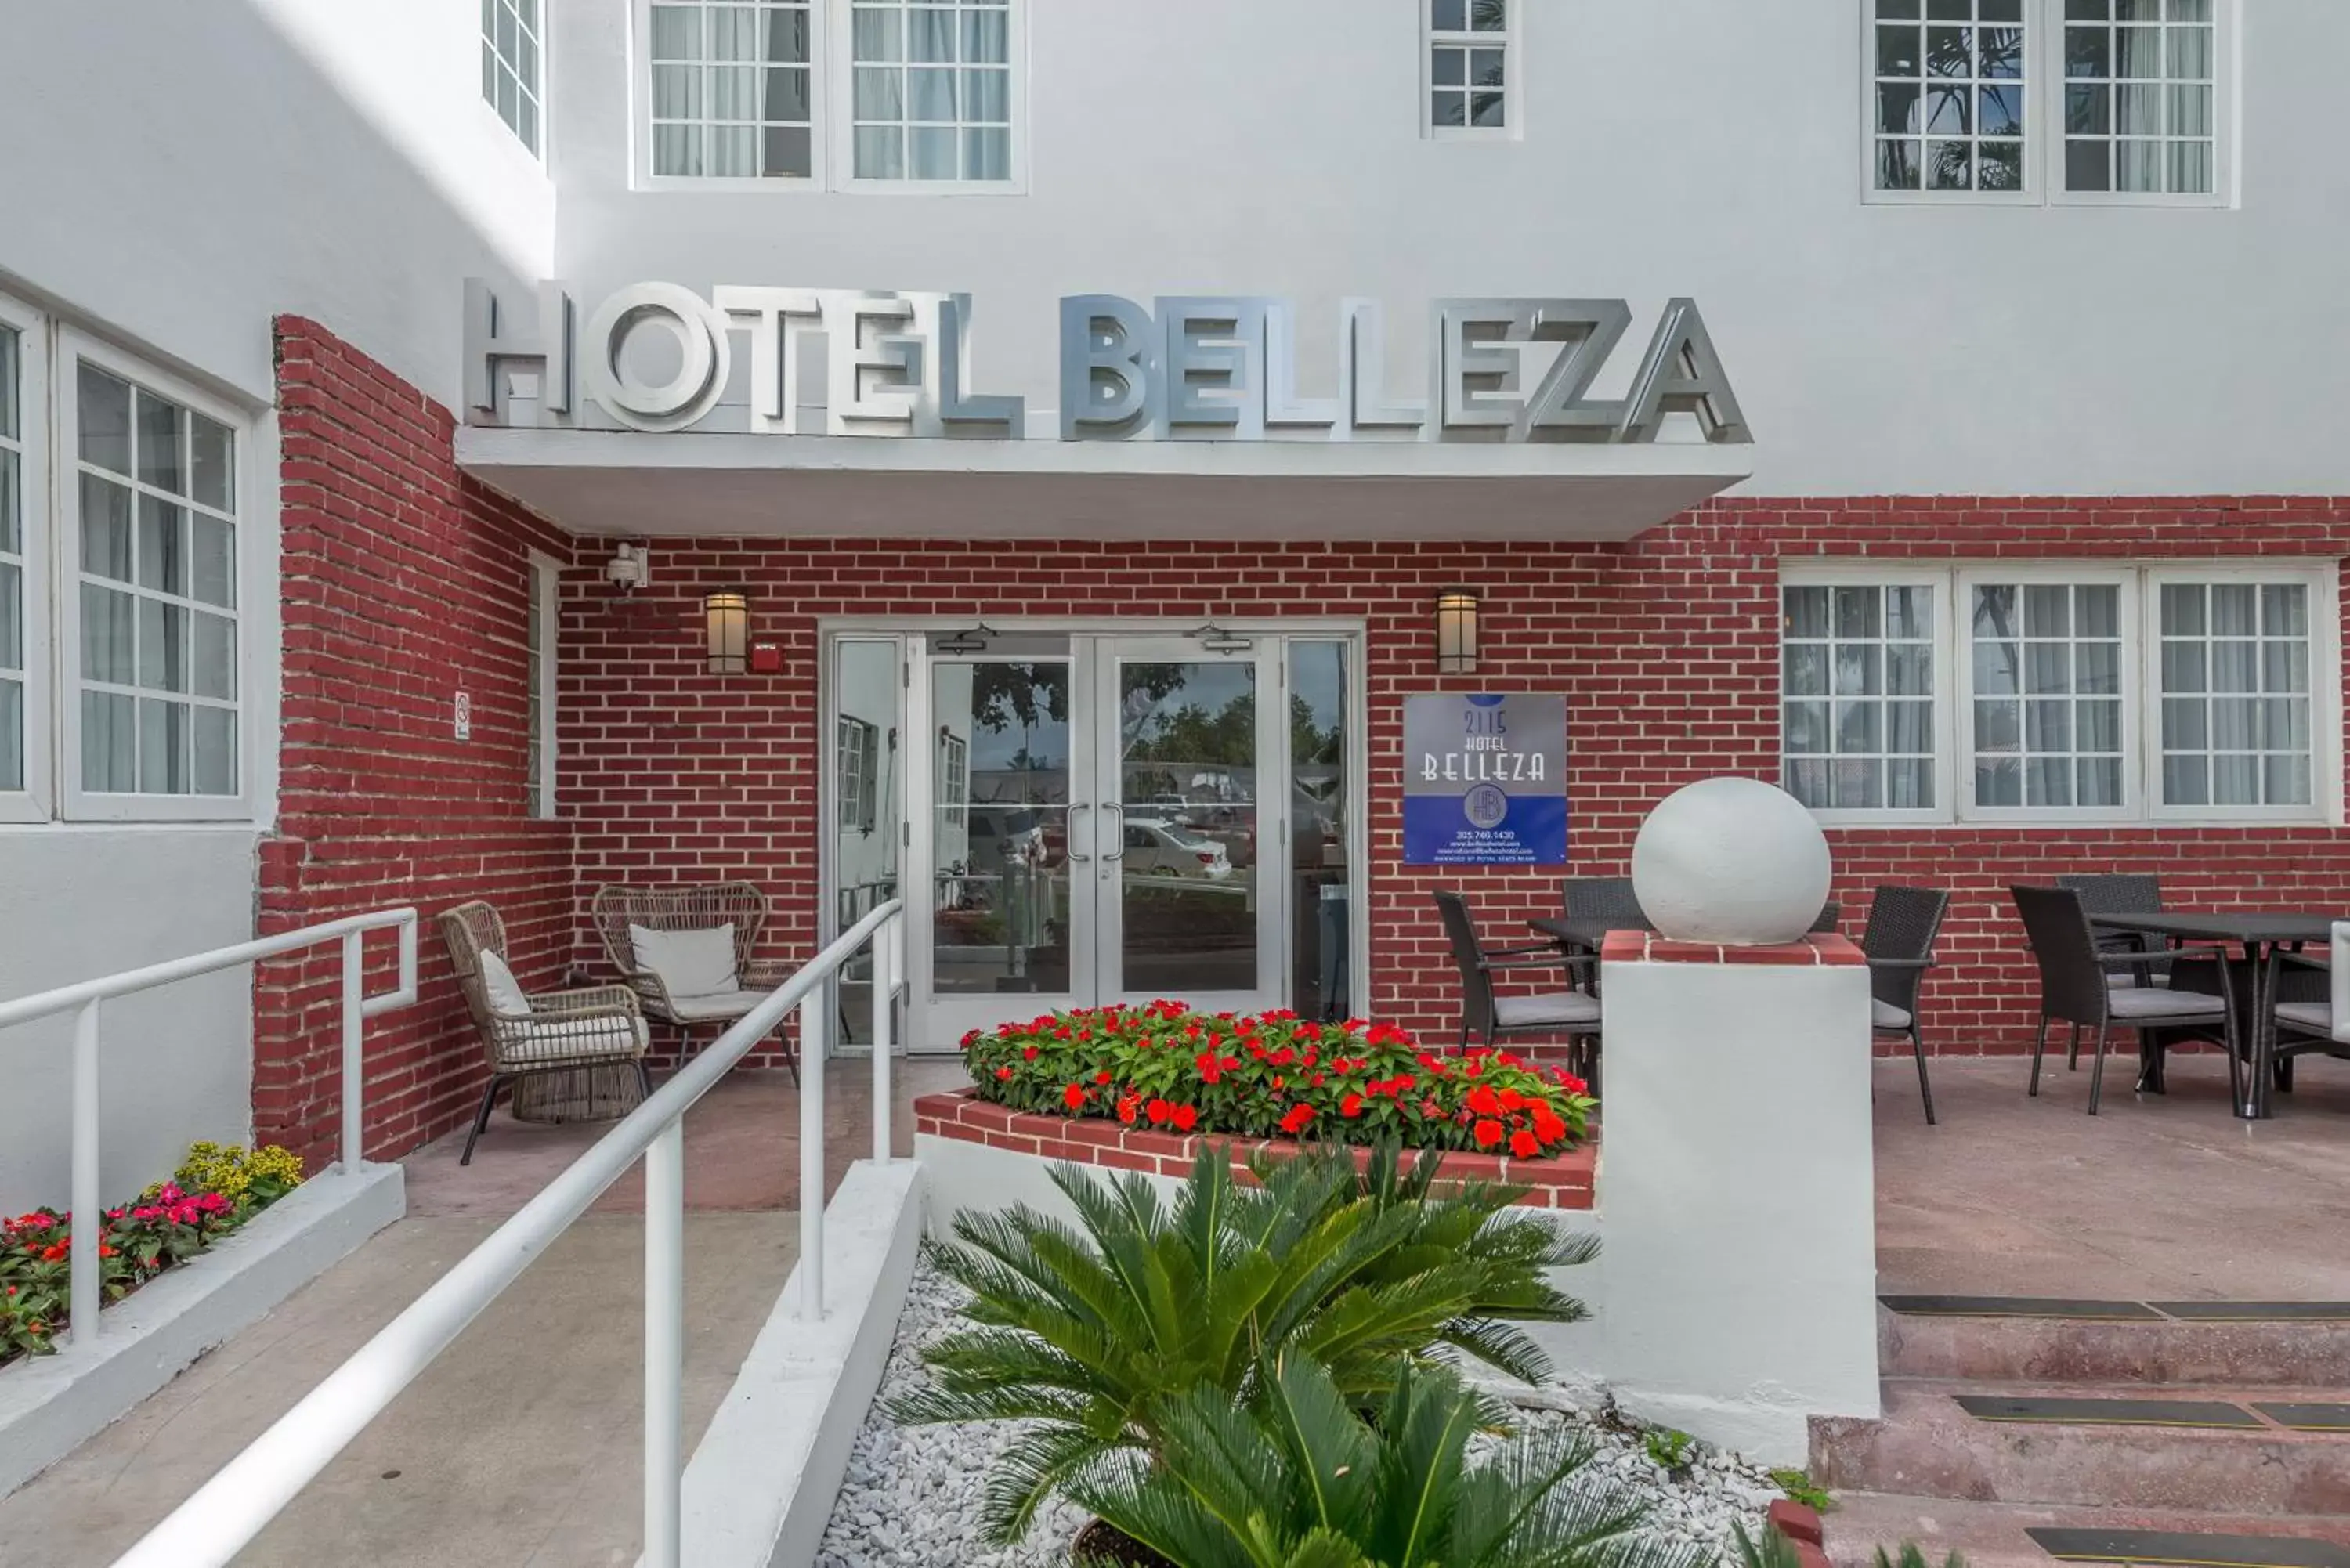 Facade/entrance in Hotel Belleza